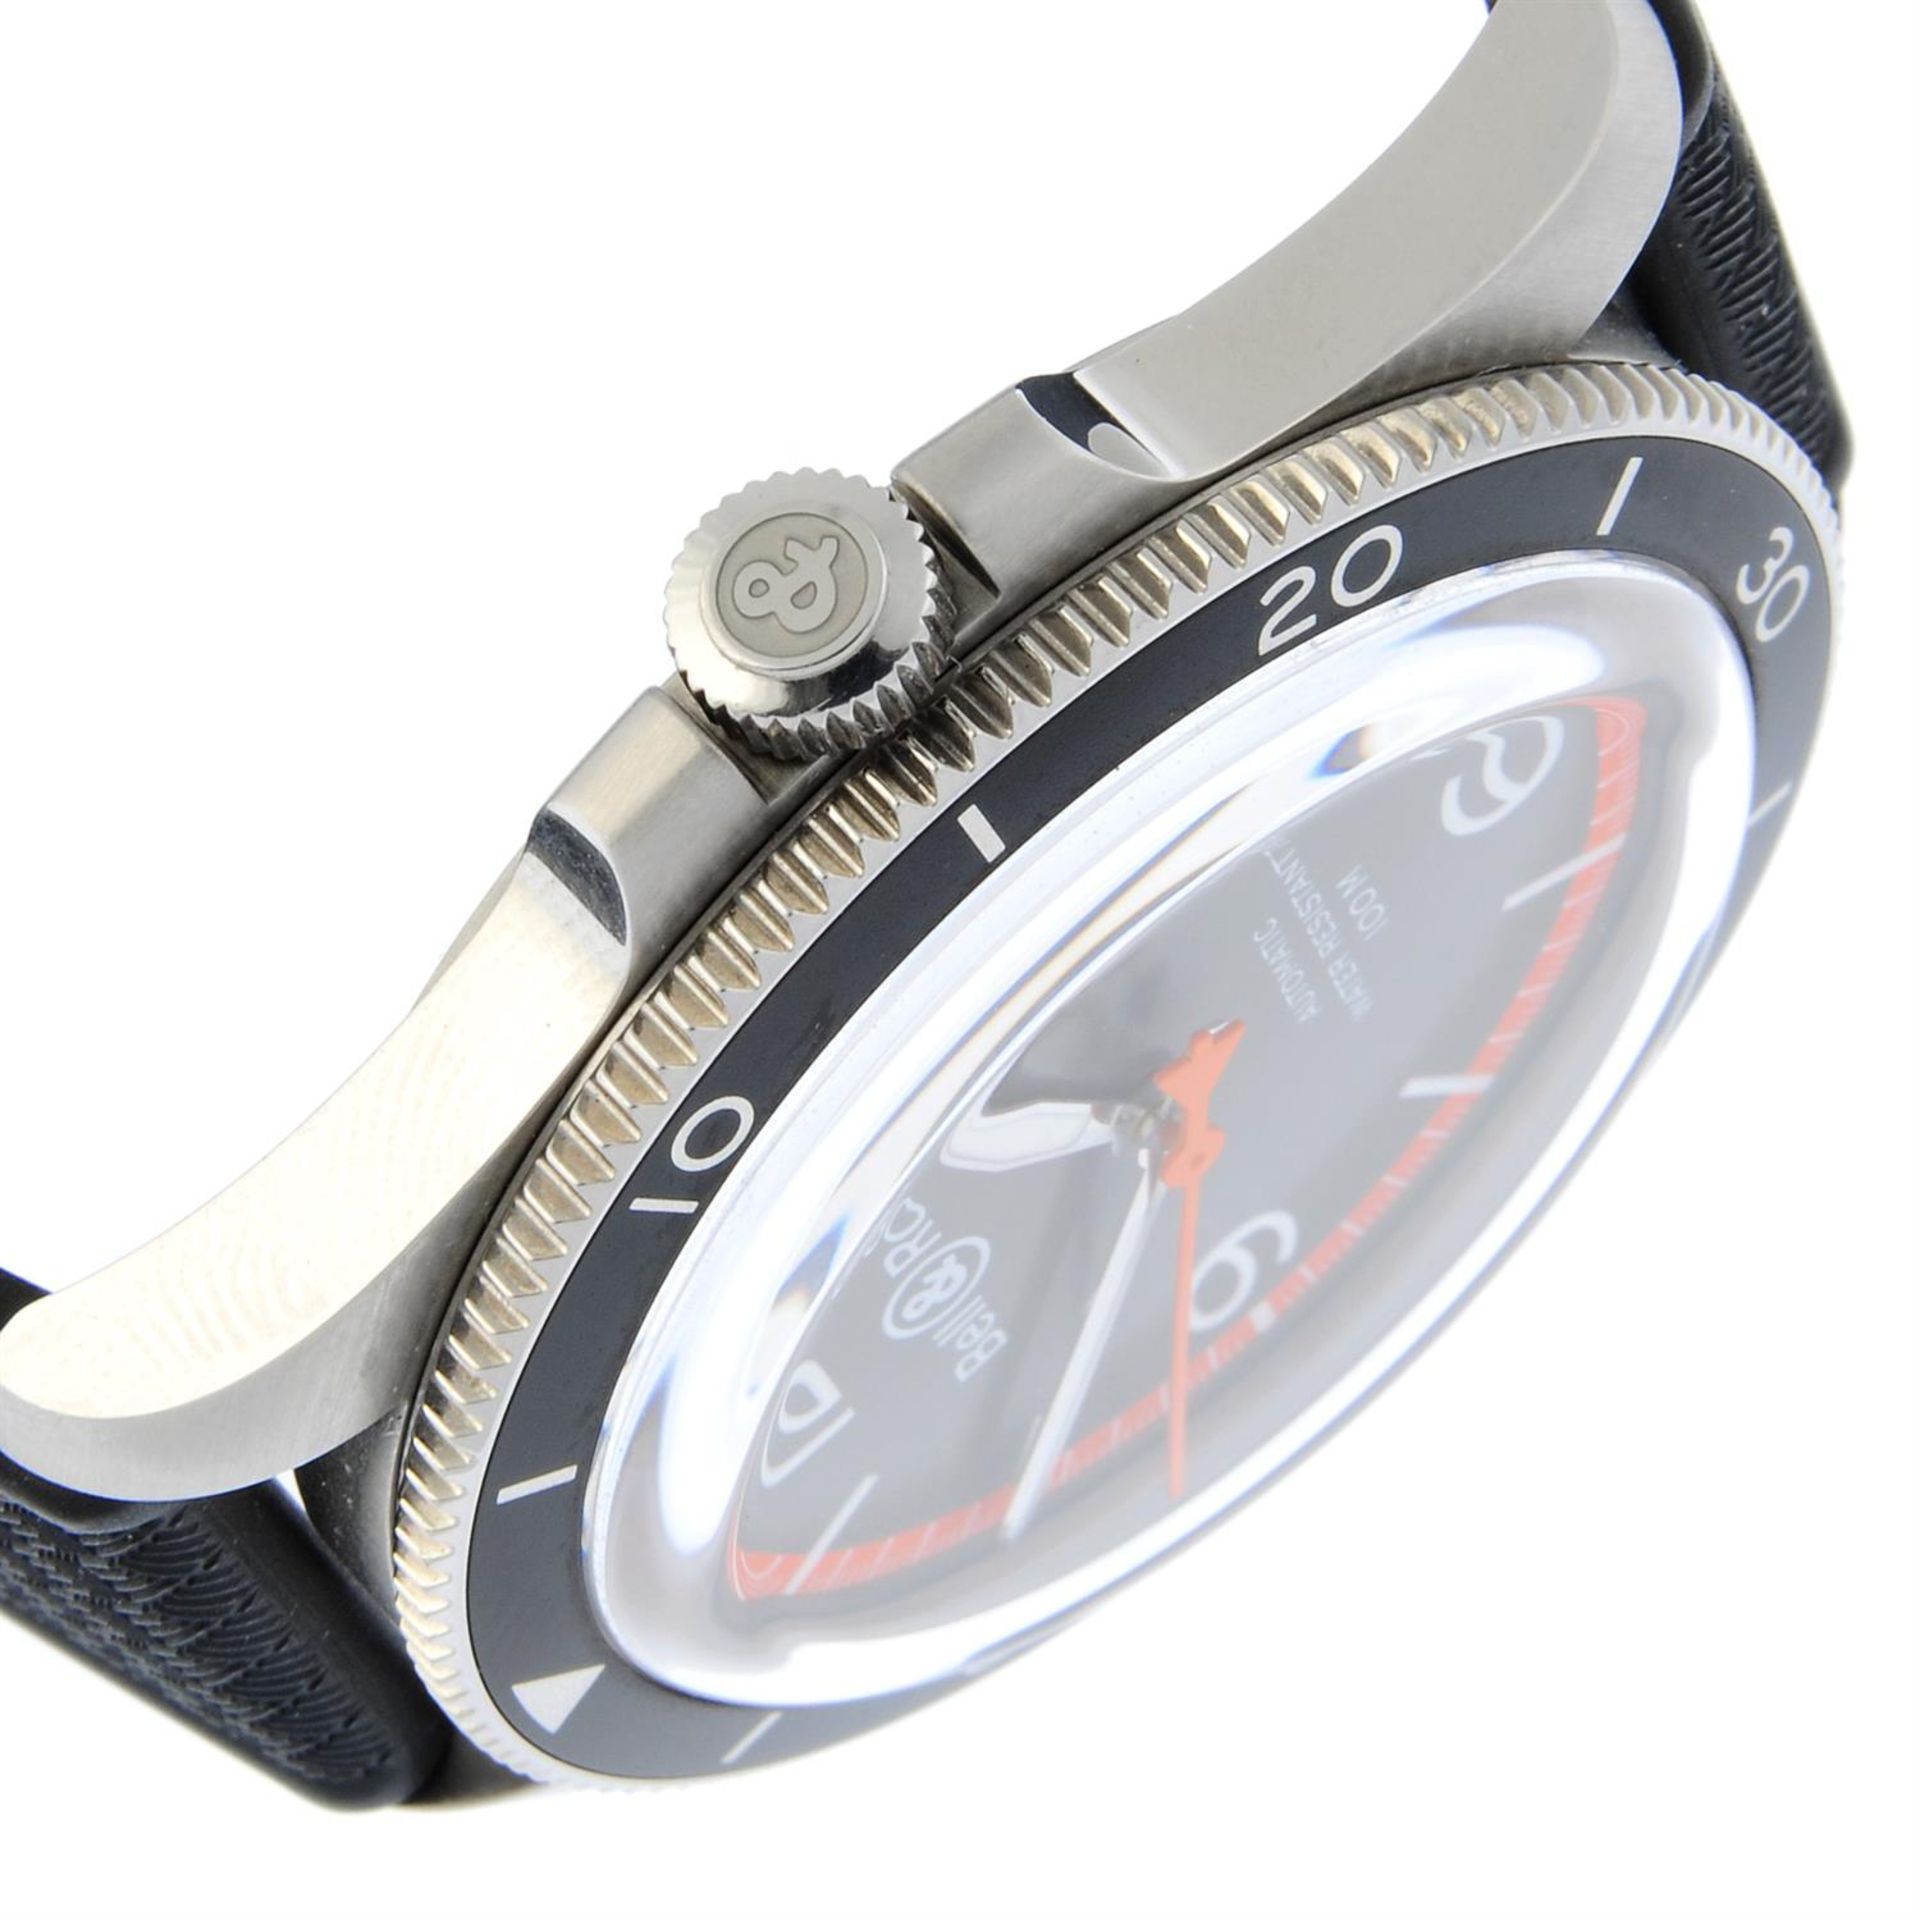 Bell & Ross - a wrist watch, 41mm. - Bild 2 aus 6